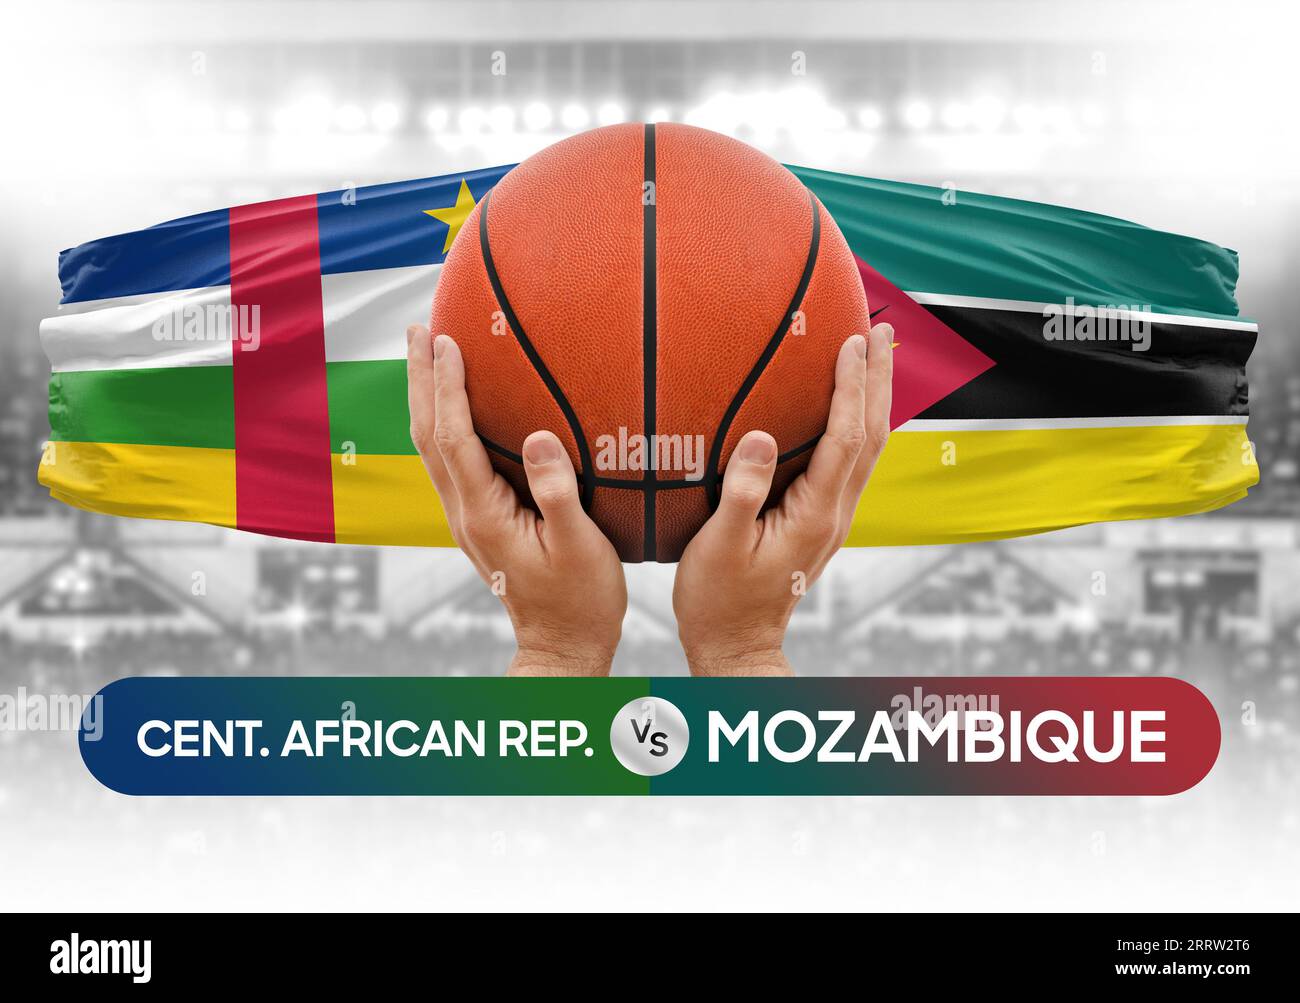 Immagine del concetto di coppa di gara delle partite di pallacanestro della Repubblica Centrafricana contro le squadre nazionali di pallacanestro del Mozambico Foto Stock